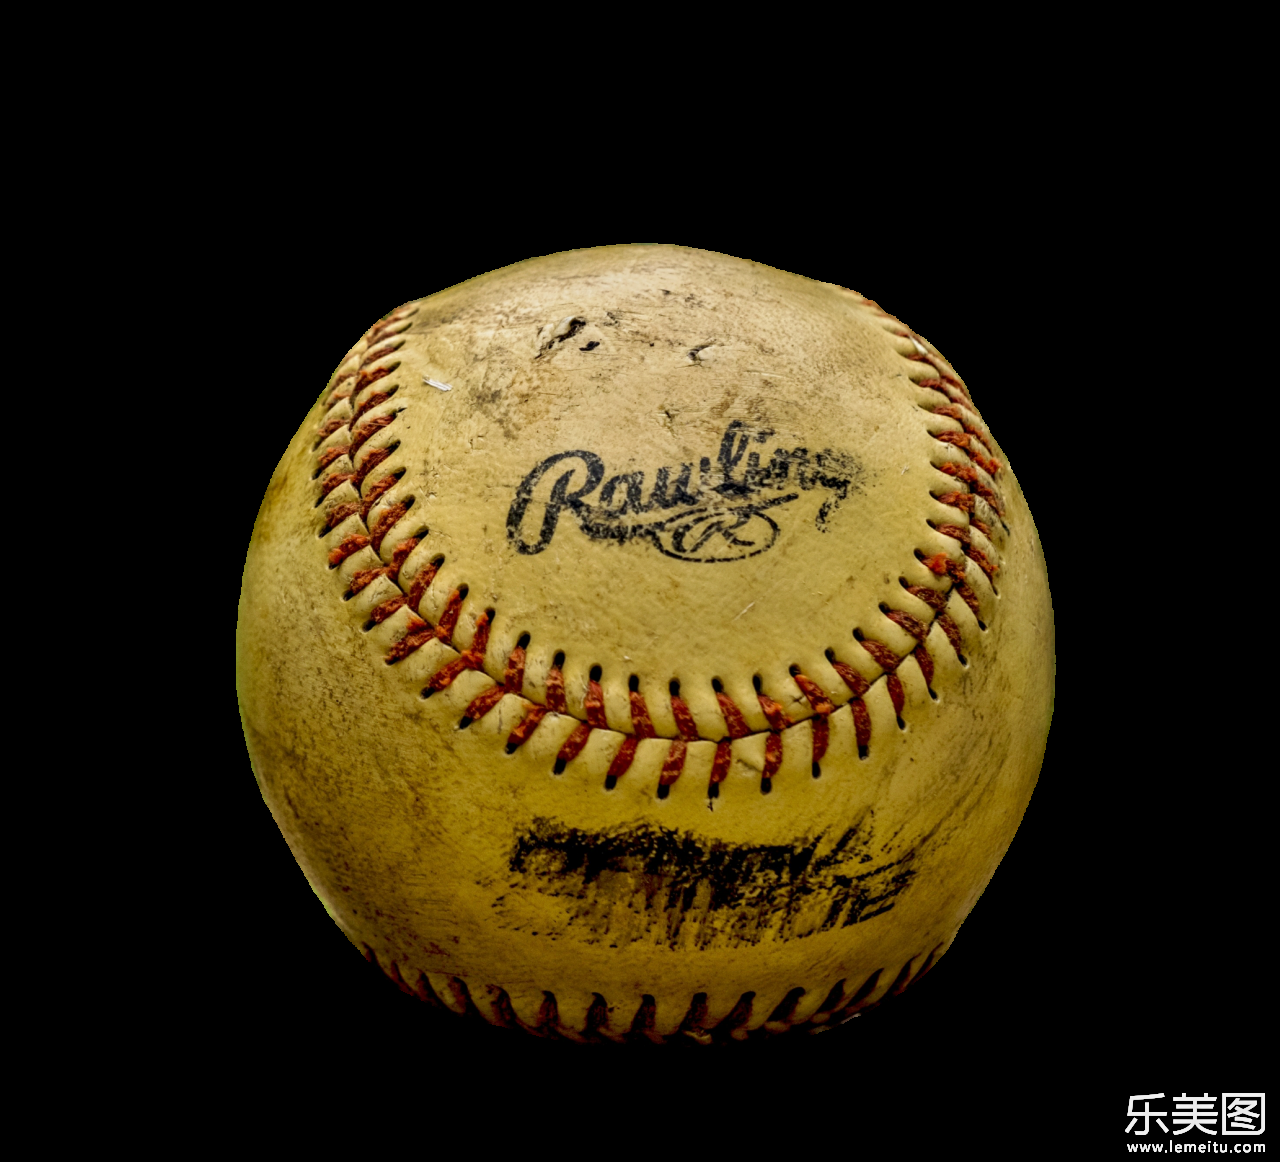 一个老旧泛黄的棒球